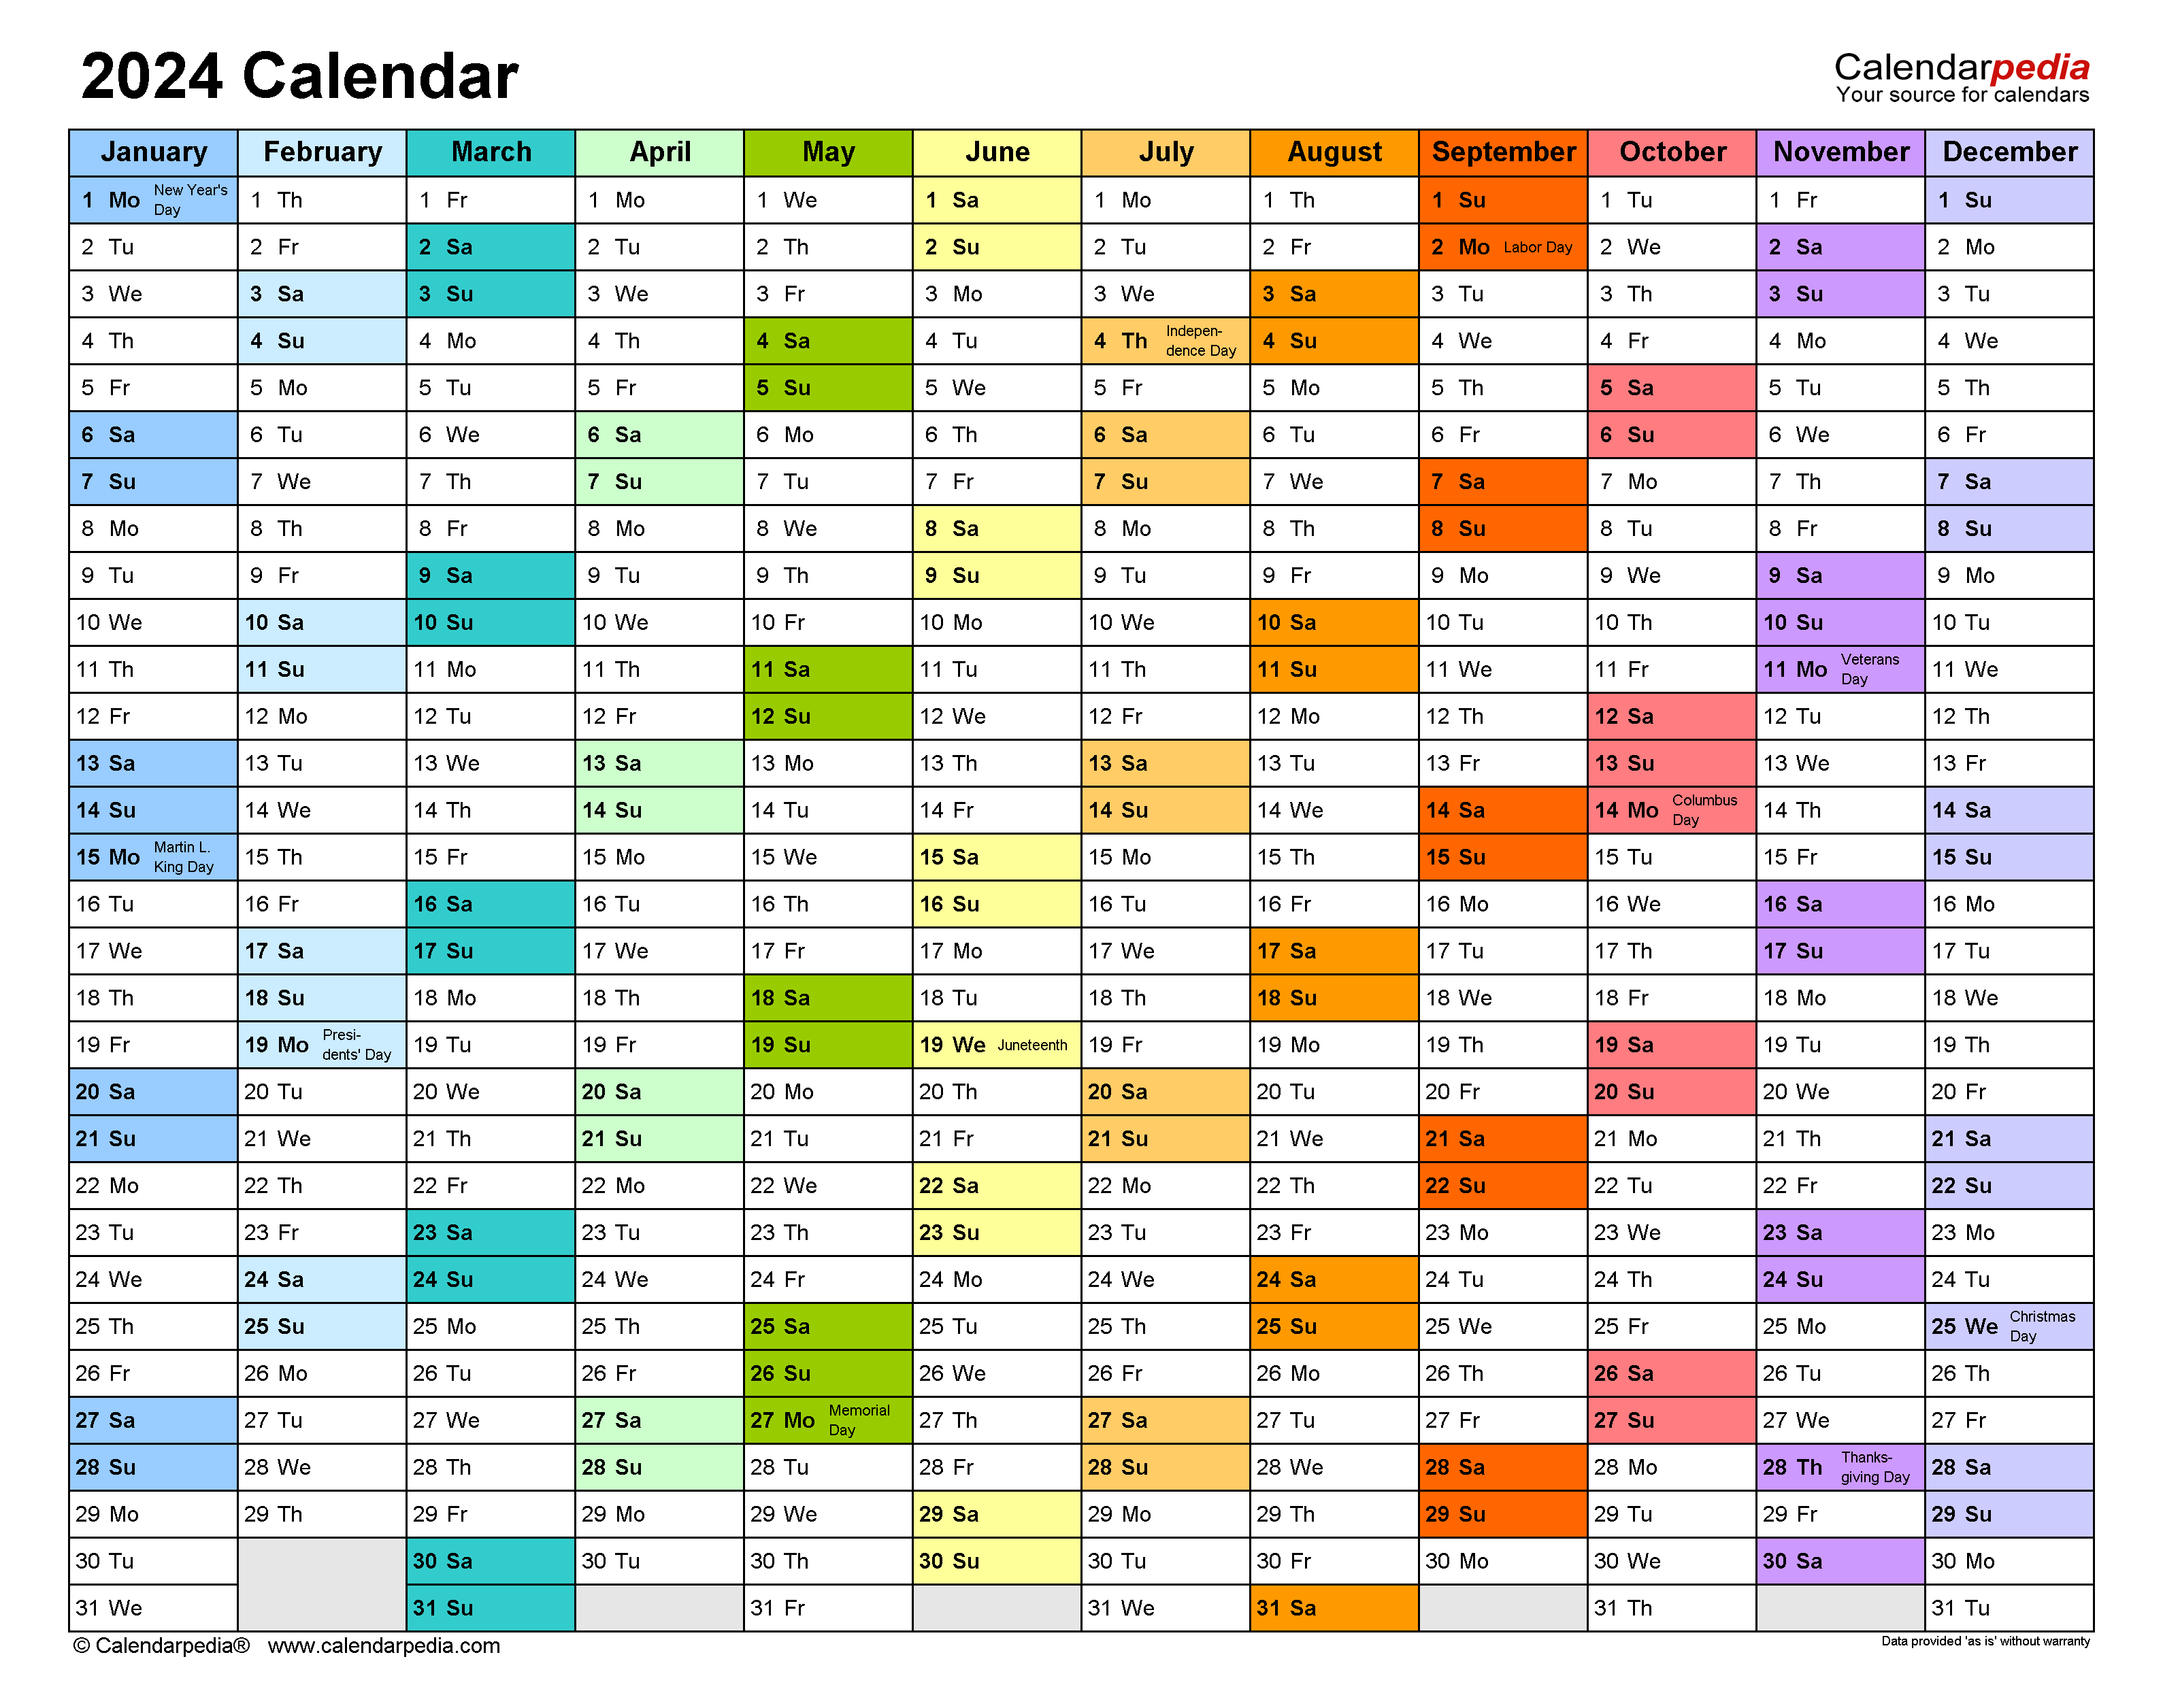 2024 Calendar - Free Printable Word Templates - Calendarpedia for Win Printable Calendar 2024